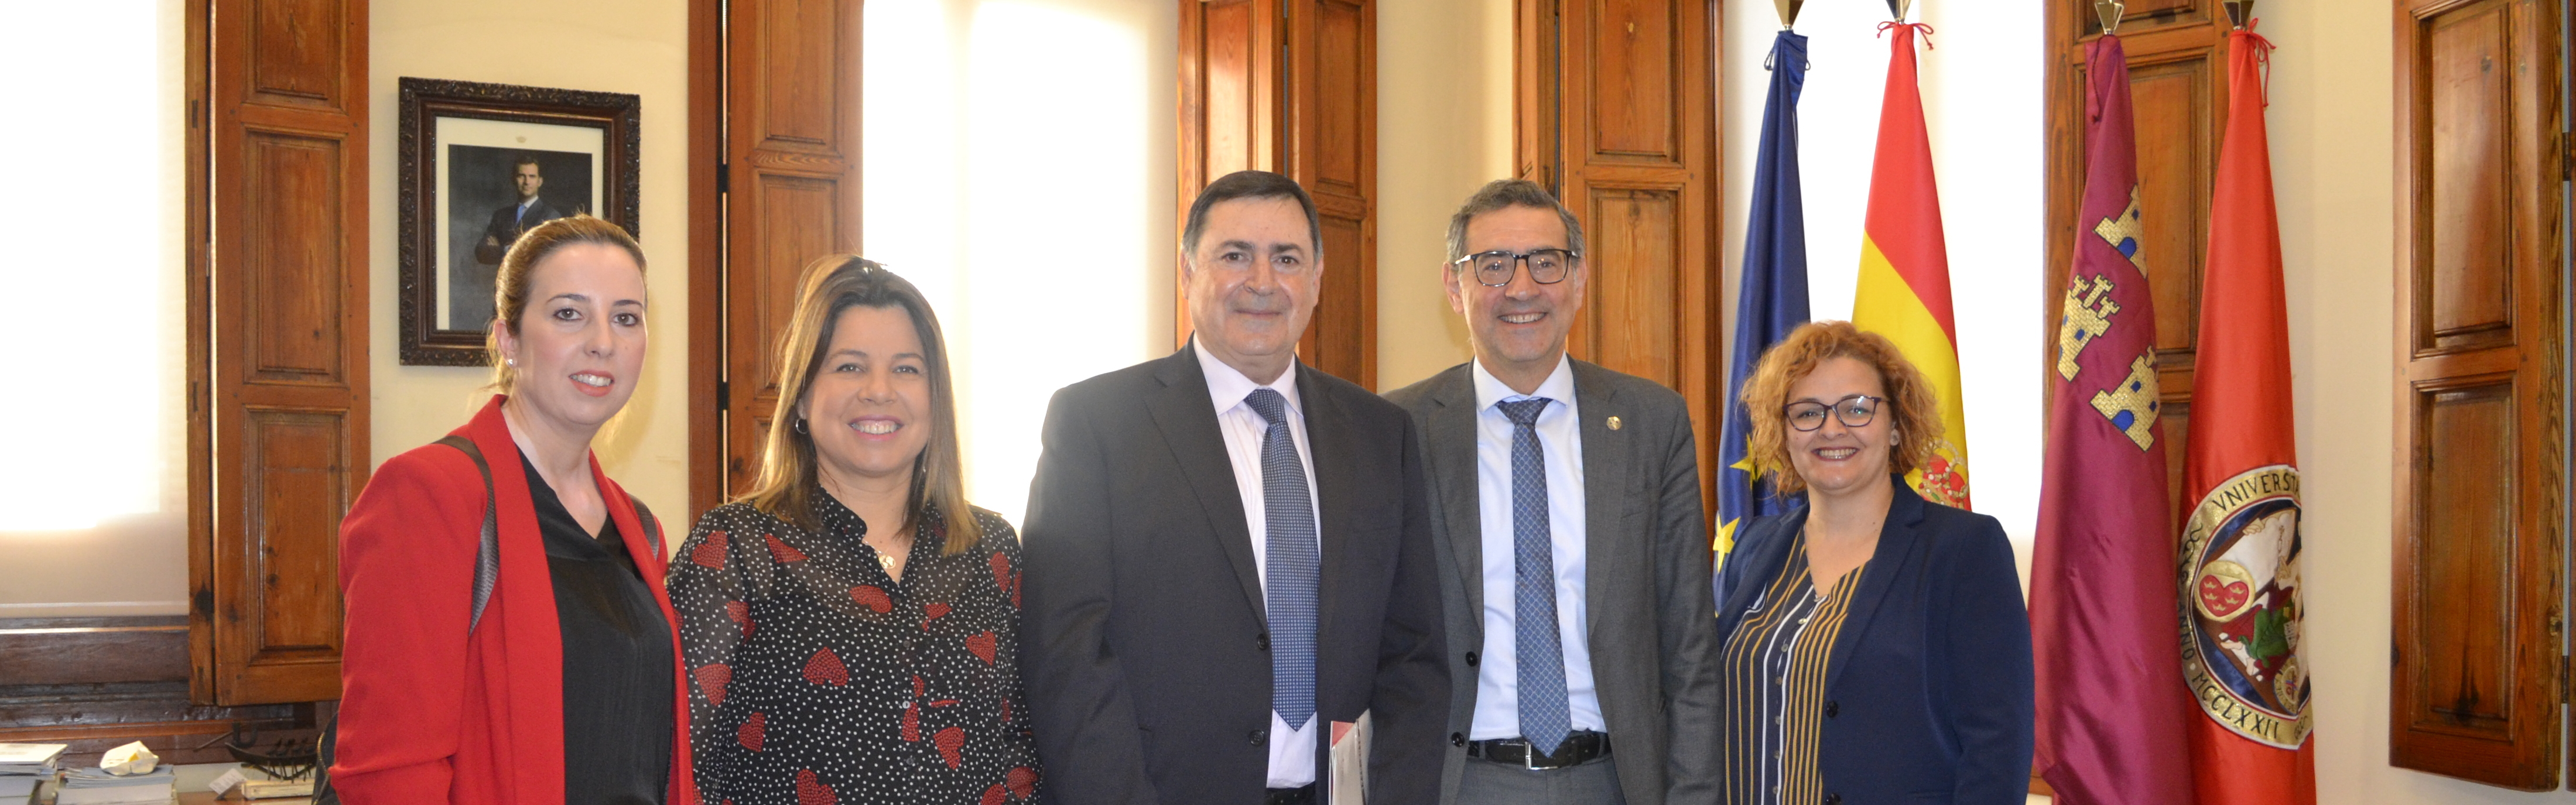 La Universidad de Murcia y el Ayuntamiento de Librilla firman un convenio para crear una sede permanente en el municipio